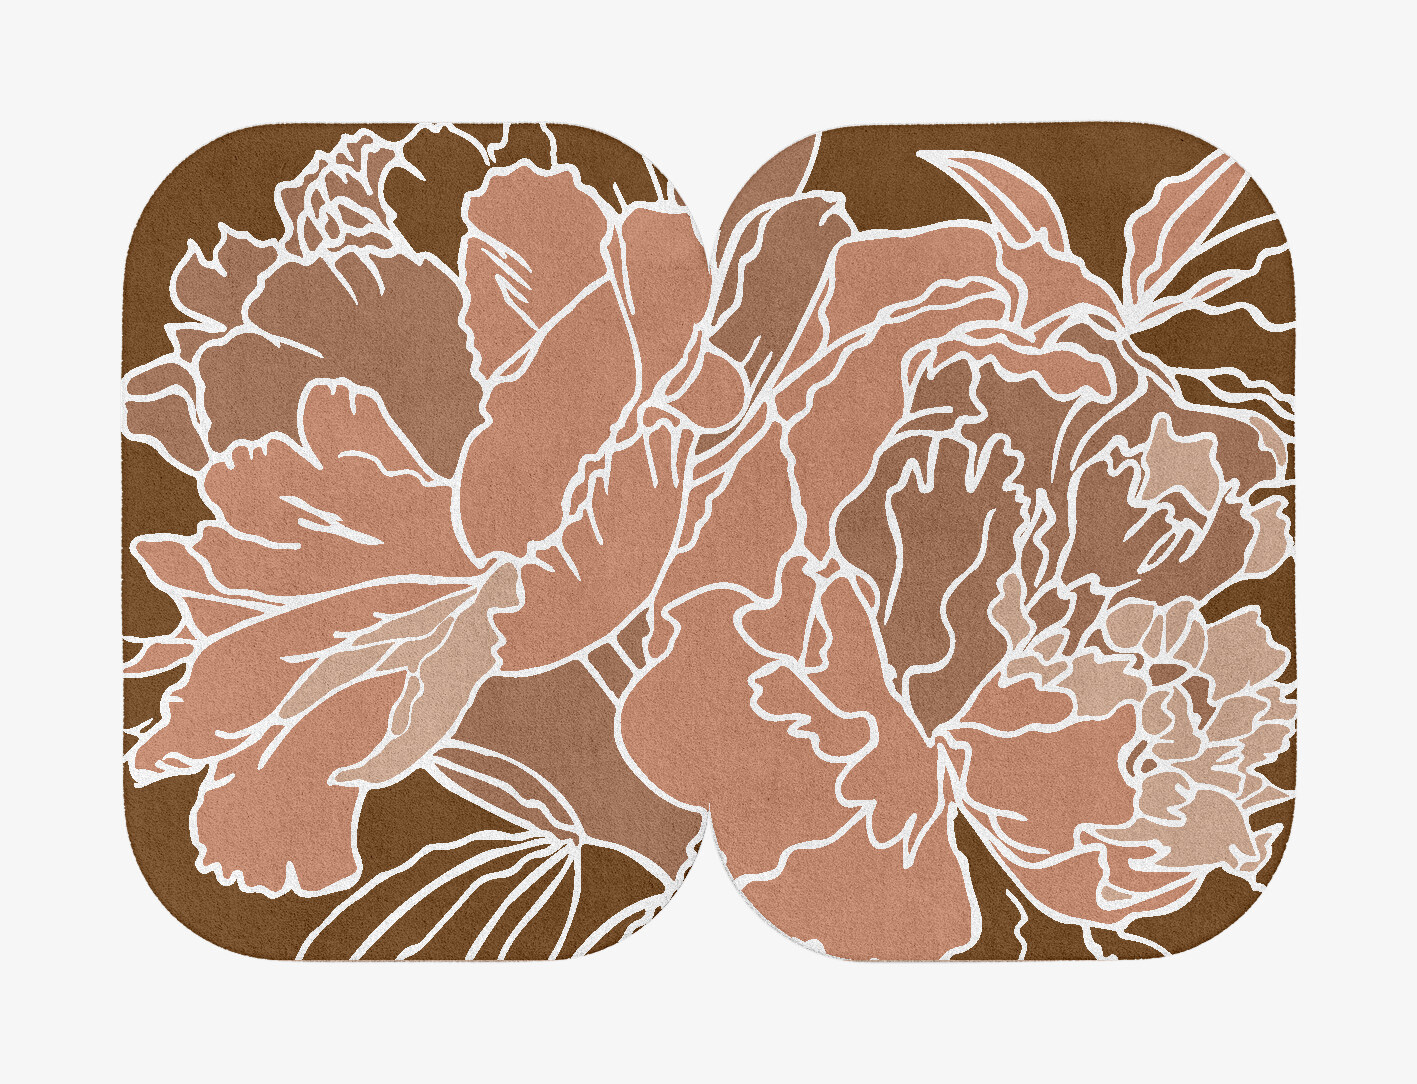 Chrysanthemum Field of Flowers Eight Hand Tufted Pure Wool Custom Rug by Rug Artisan